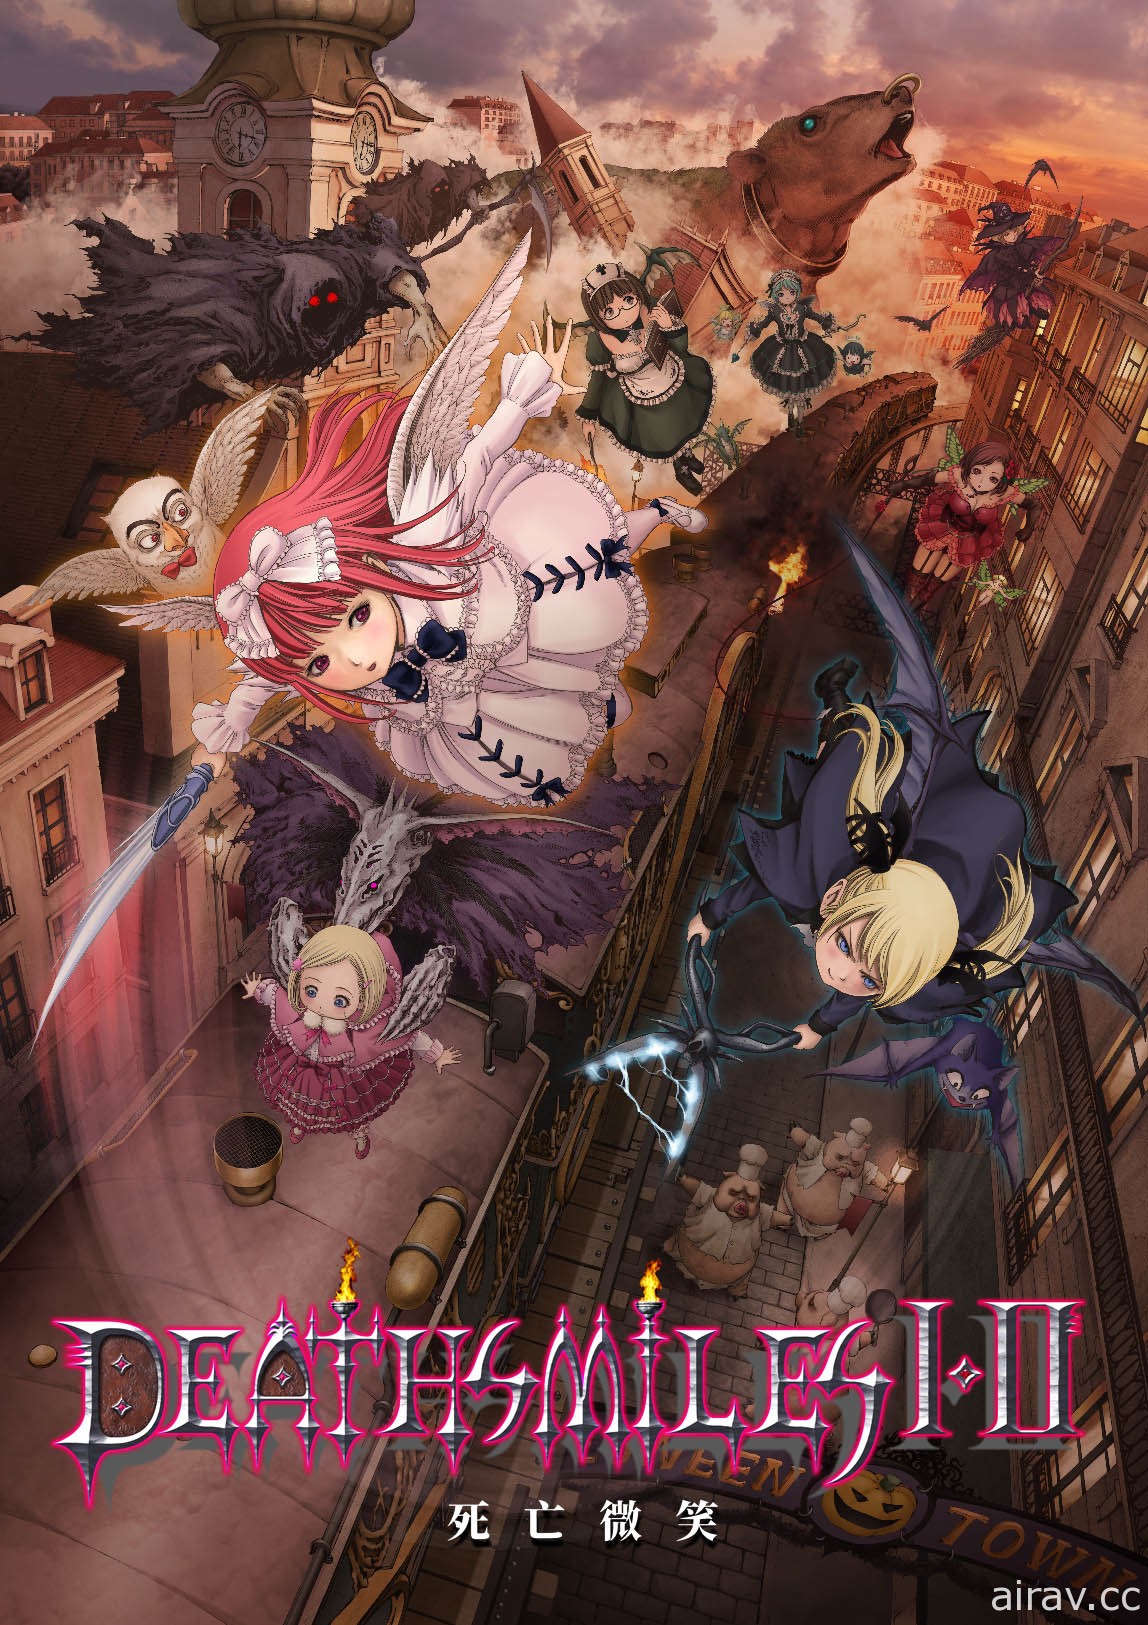 射击游戏《死亡微笑 I・II》将推中文版 对应《哥德系魔法少女》追加角色